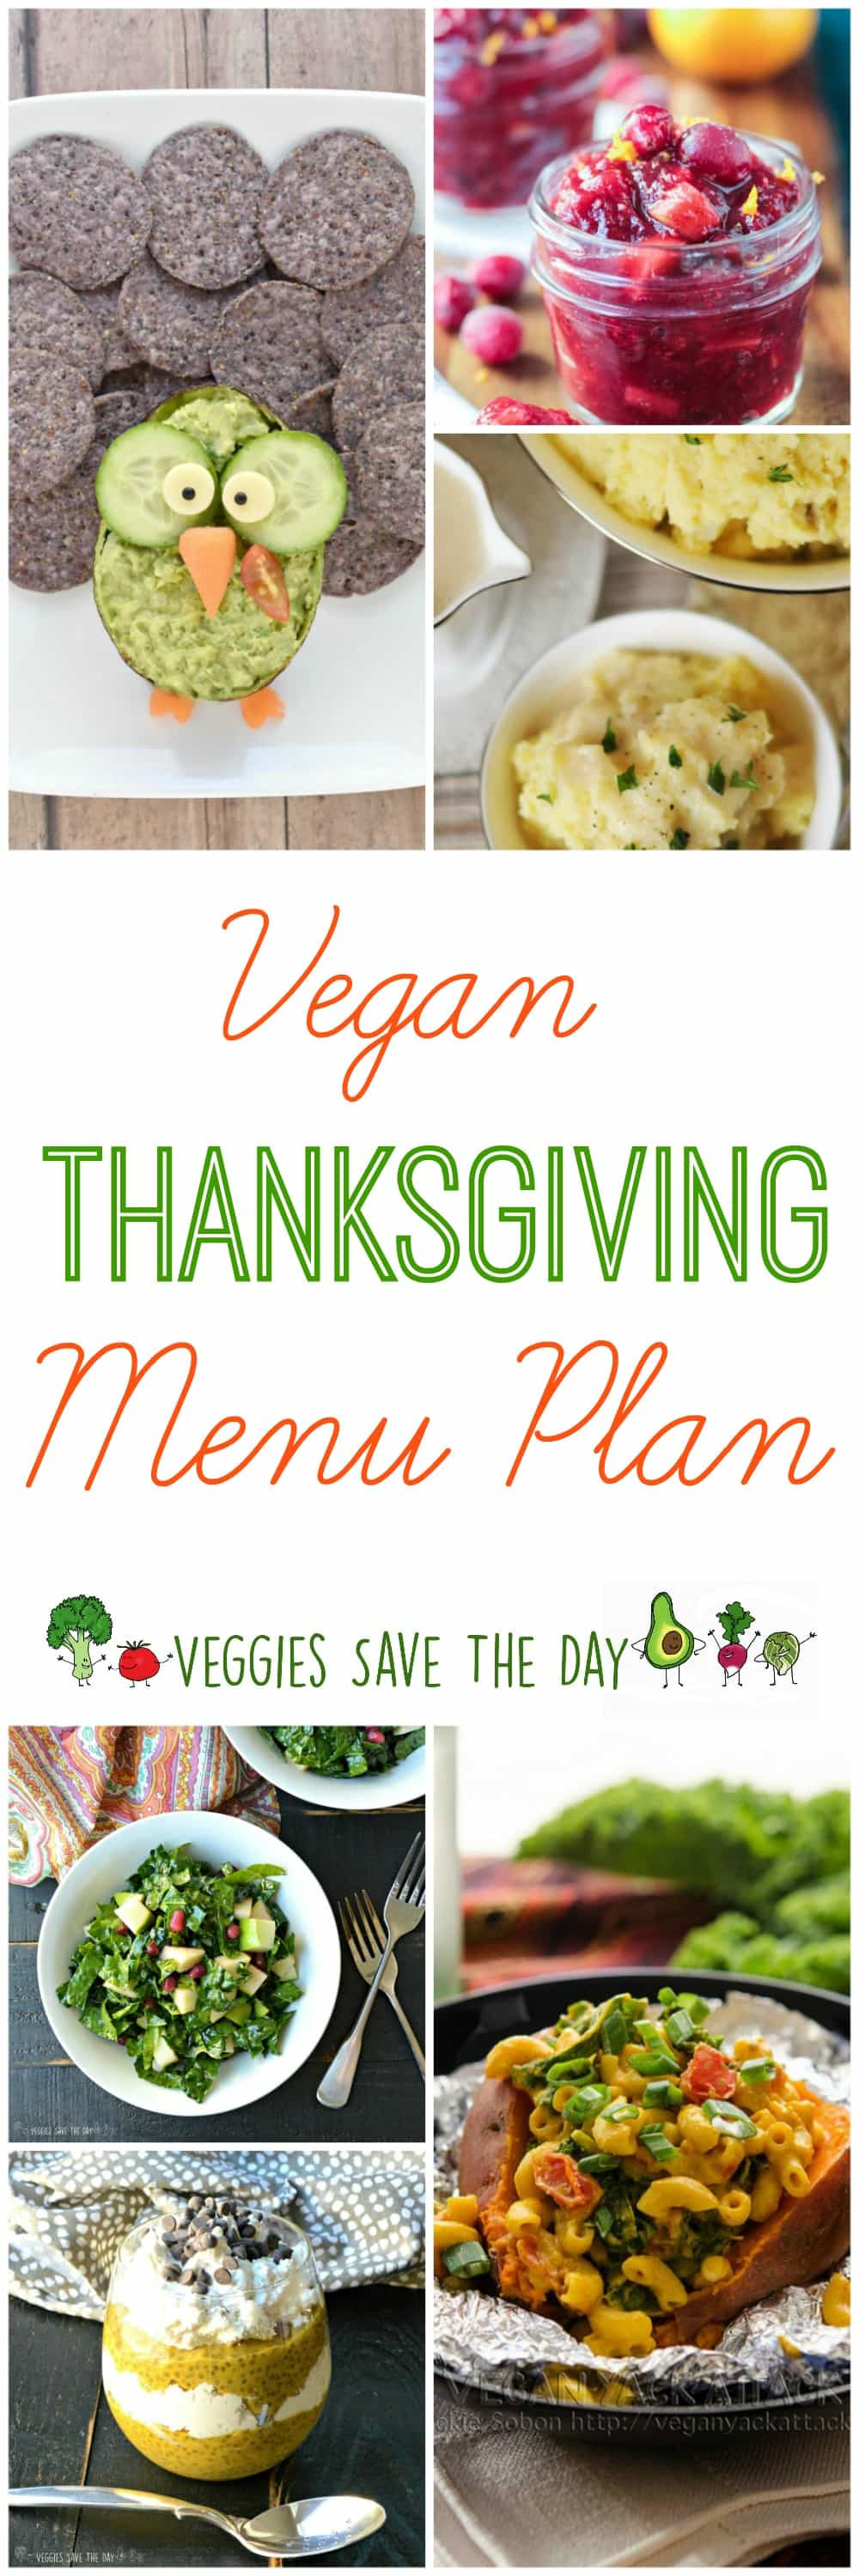 Vegetarian Thanksgiving Menu
 Vegan Thanksgiving Menu Plan Veggies Save The Day